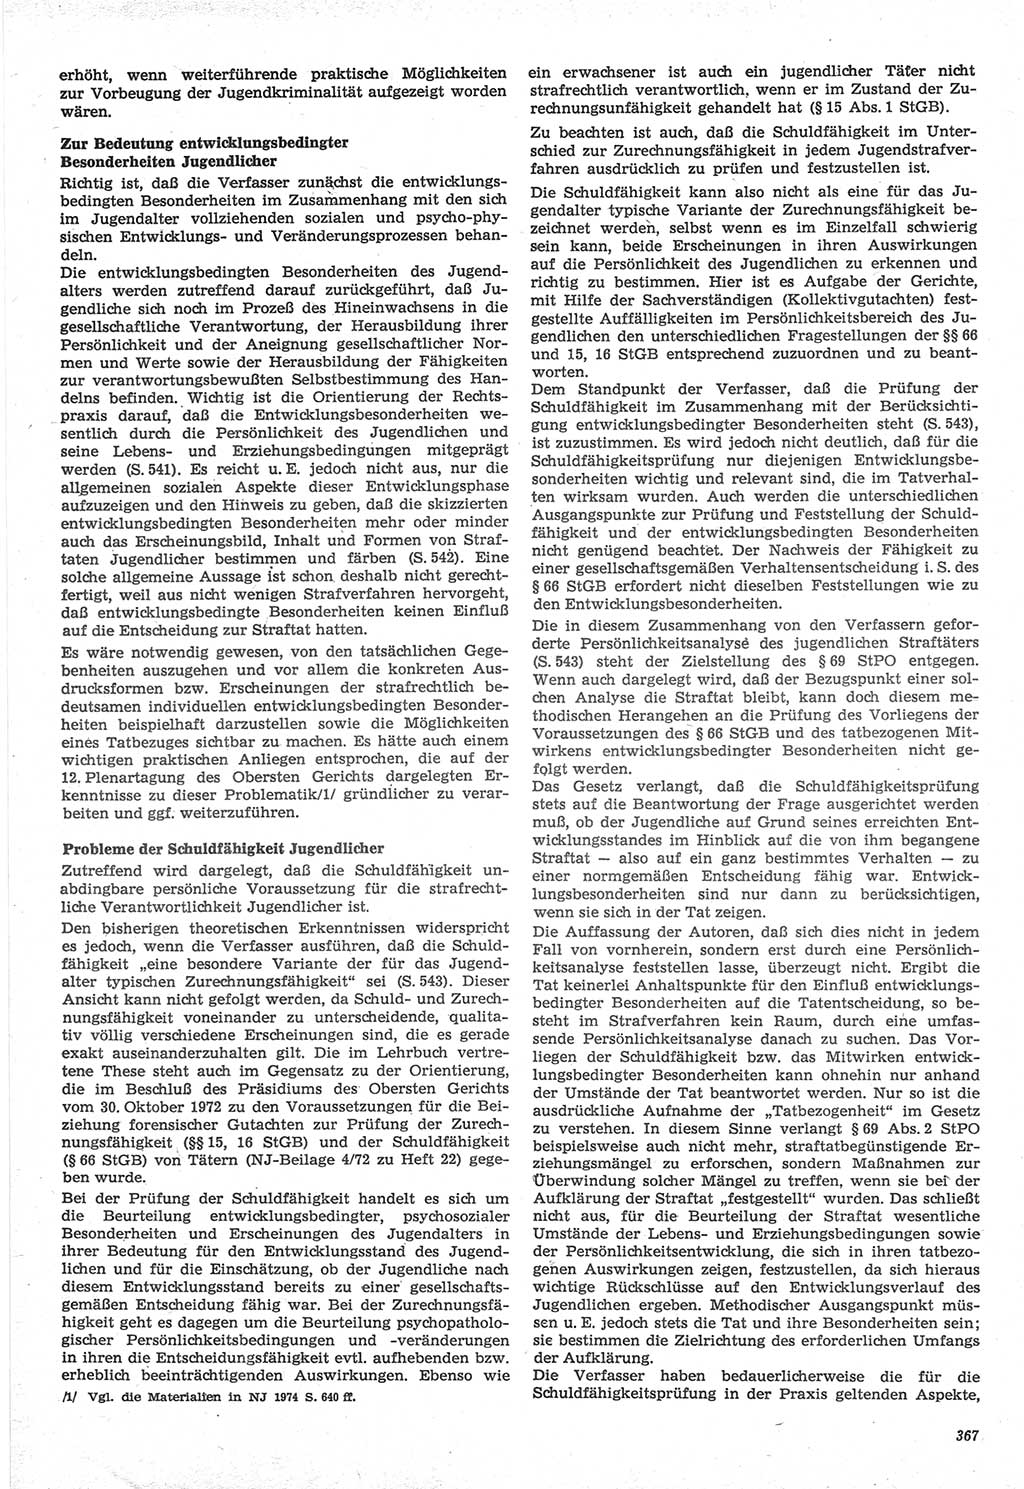 Neue Justiz (NJ), Zeitschrift für Recht und Rechtswissenschaft-Zeitschrift, sozialistisches Recht und Gesetzlichkeit, 31. Jahrgang 1977, Seite 367 (NJ DDR 1977, S. 367)